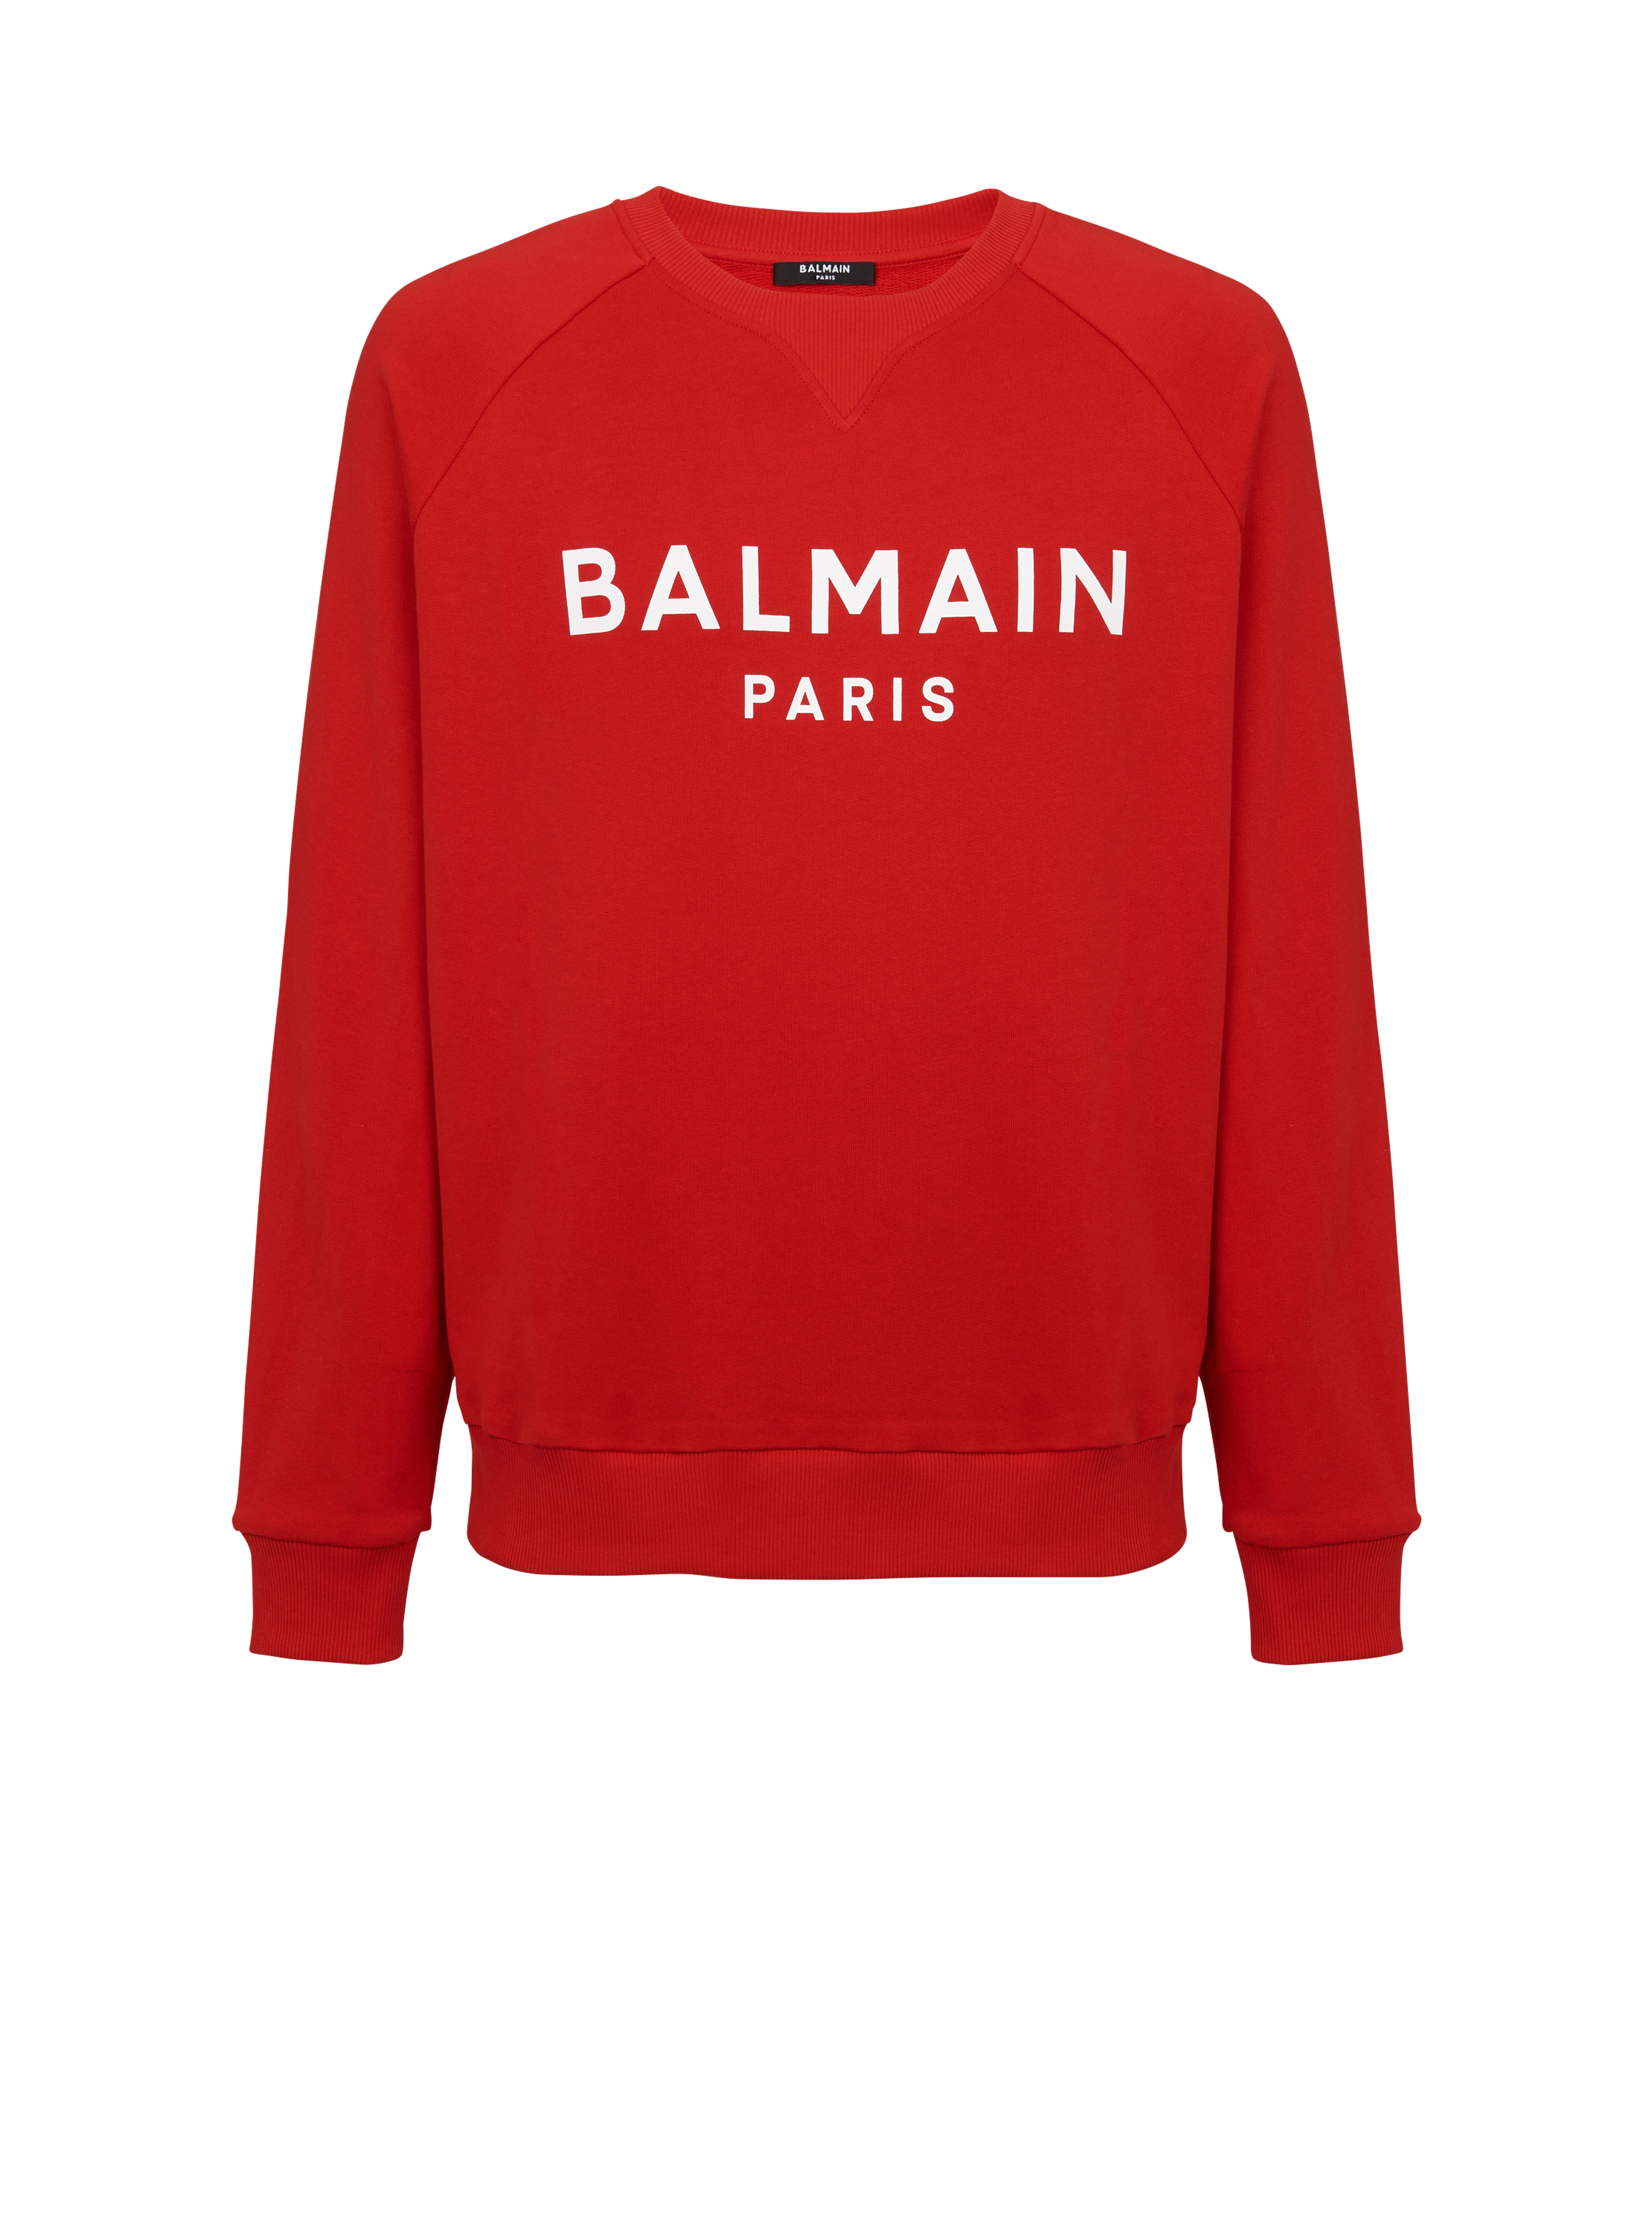 Sweat en coton floqué logo Balmain Paris, rouge